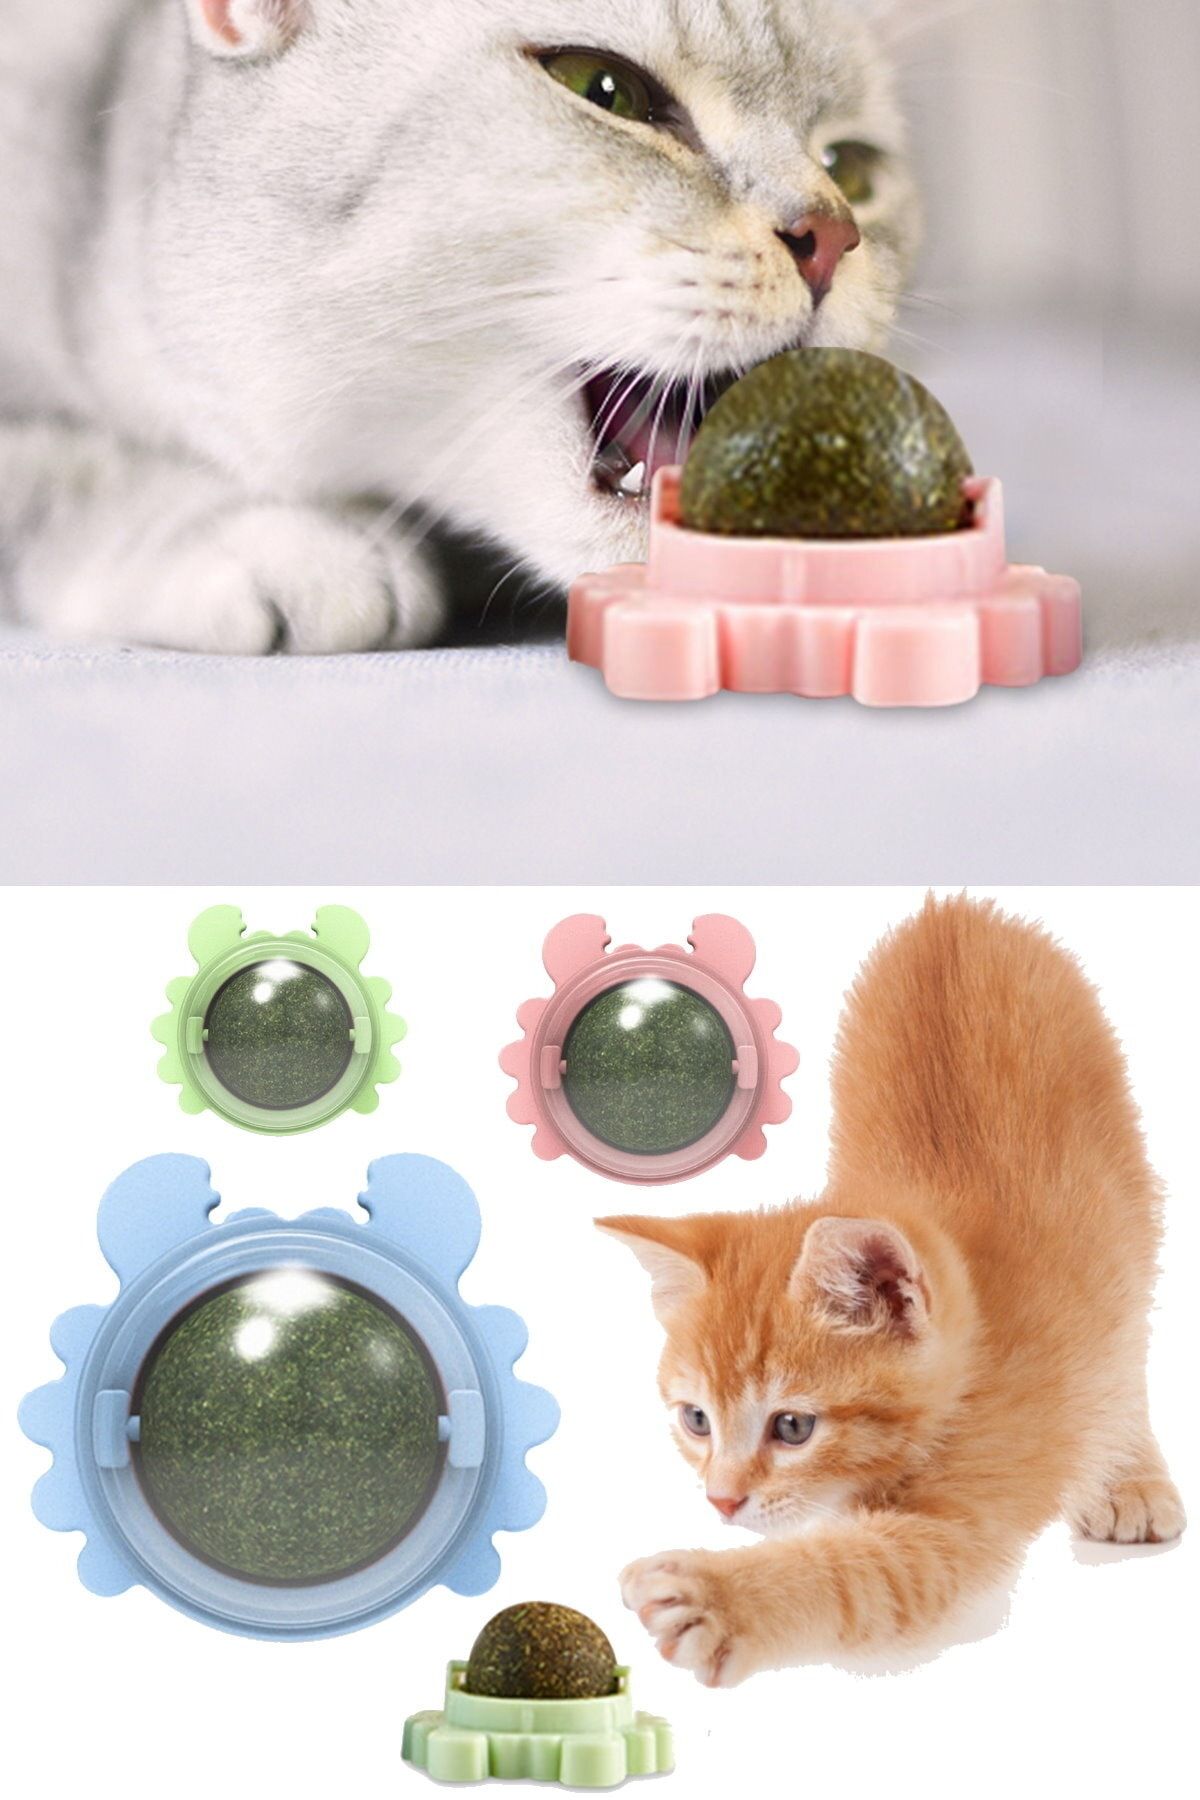 Utelips Evcil Hayvan Eşyaları Sağlıklı Yenesi Oyuncakları Top Kedi Şeker Yalama Atıştırmalıkları Catnip